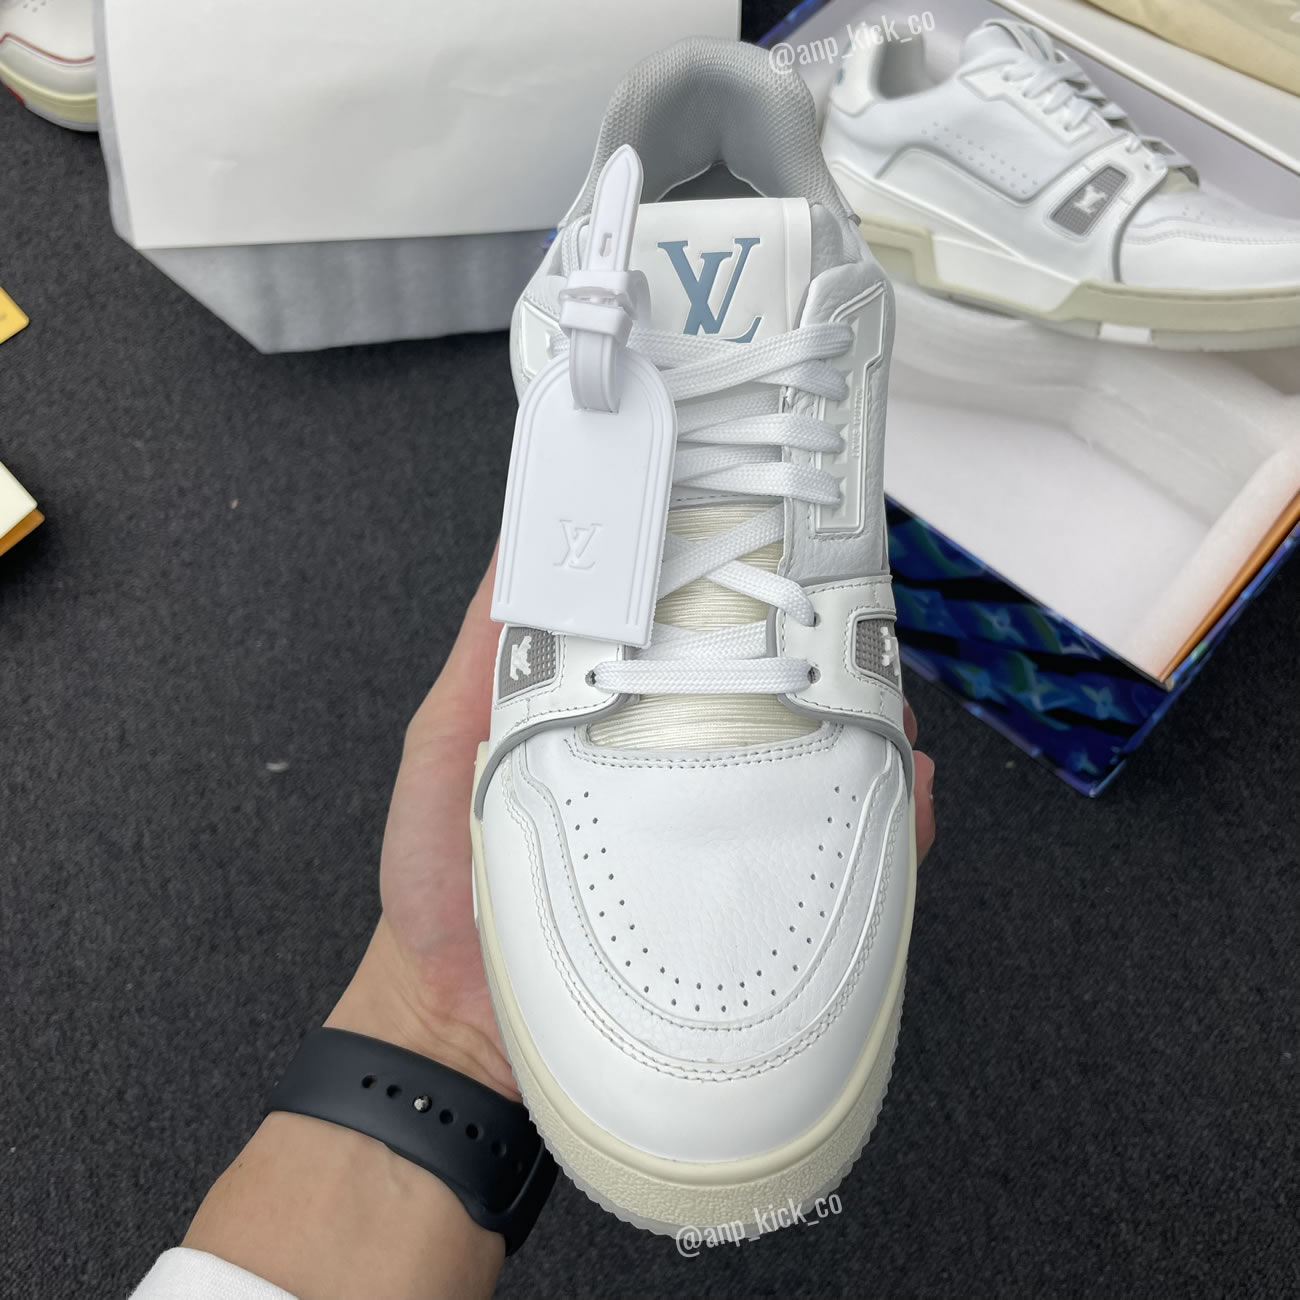 New L V Trainer Sneaker Shoes White Signature (7) - newkick.org